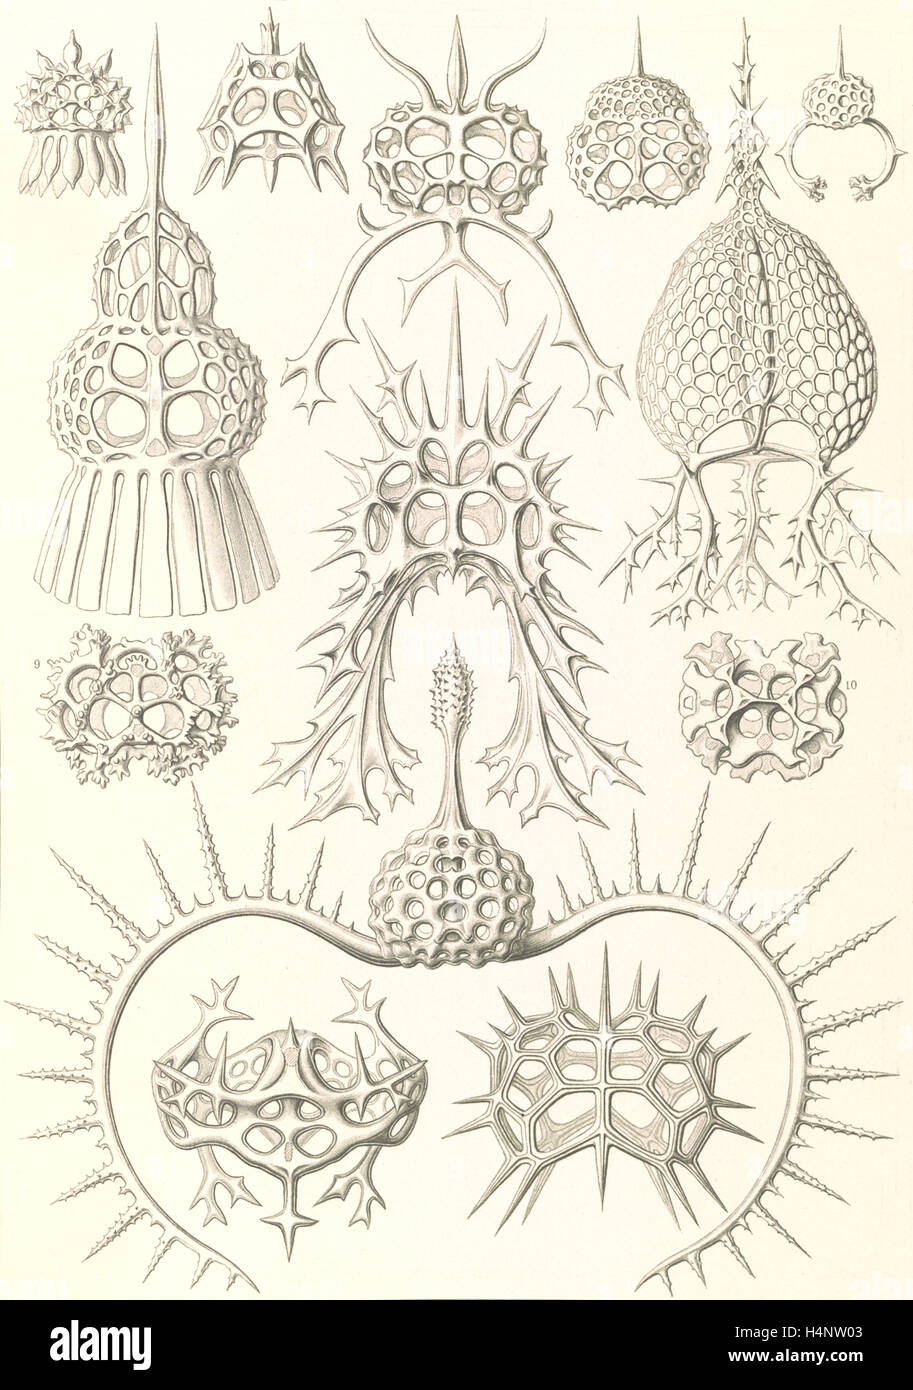 La ilustración muestra los microorganismos. Spyroidea. - Nükchenstrahlinge, 1 : impresión fotomecánica ; hoja 36 x 26 cm., 1904. Foto de stock